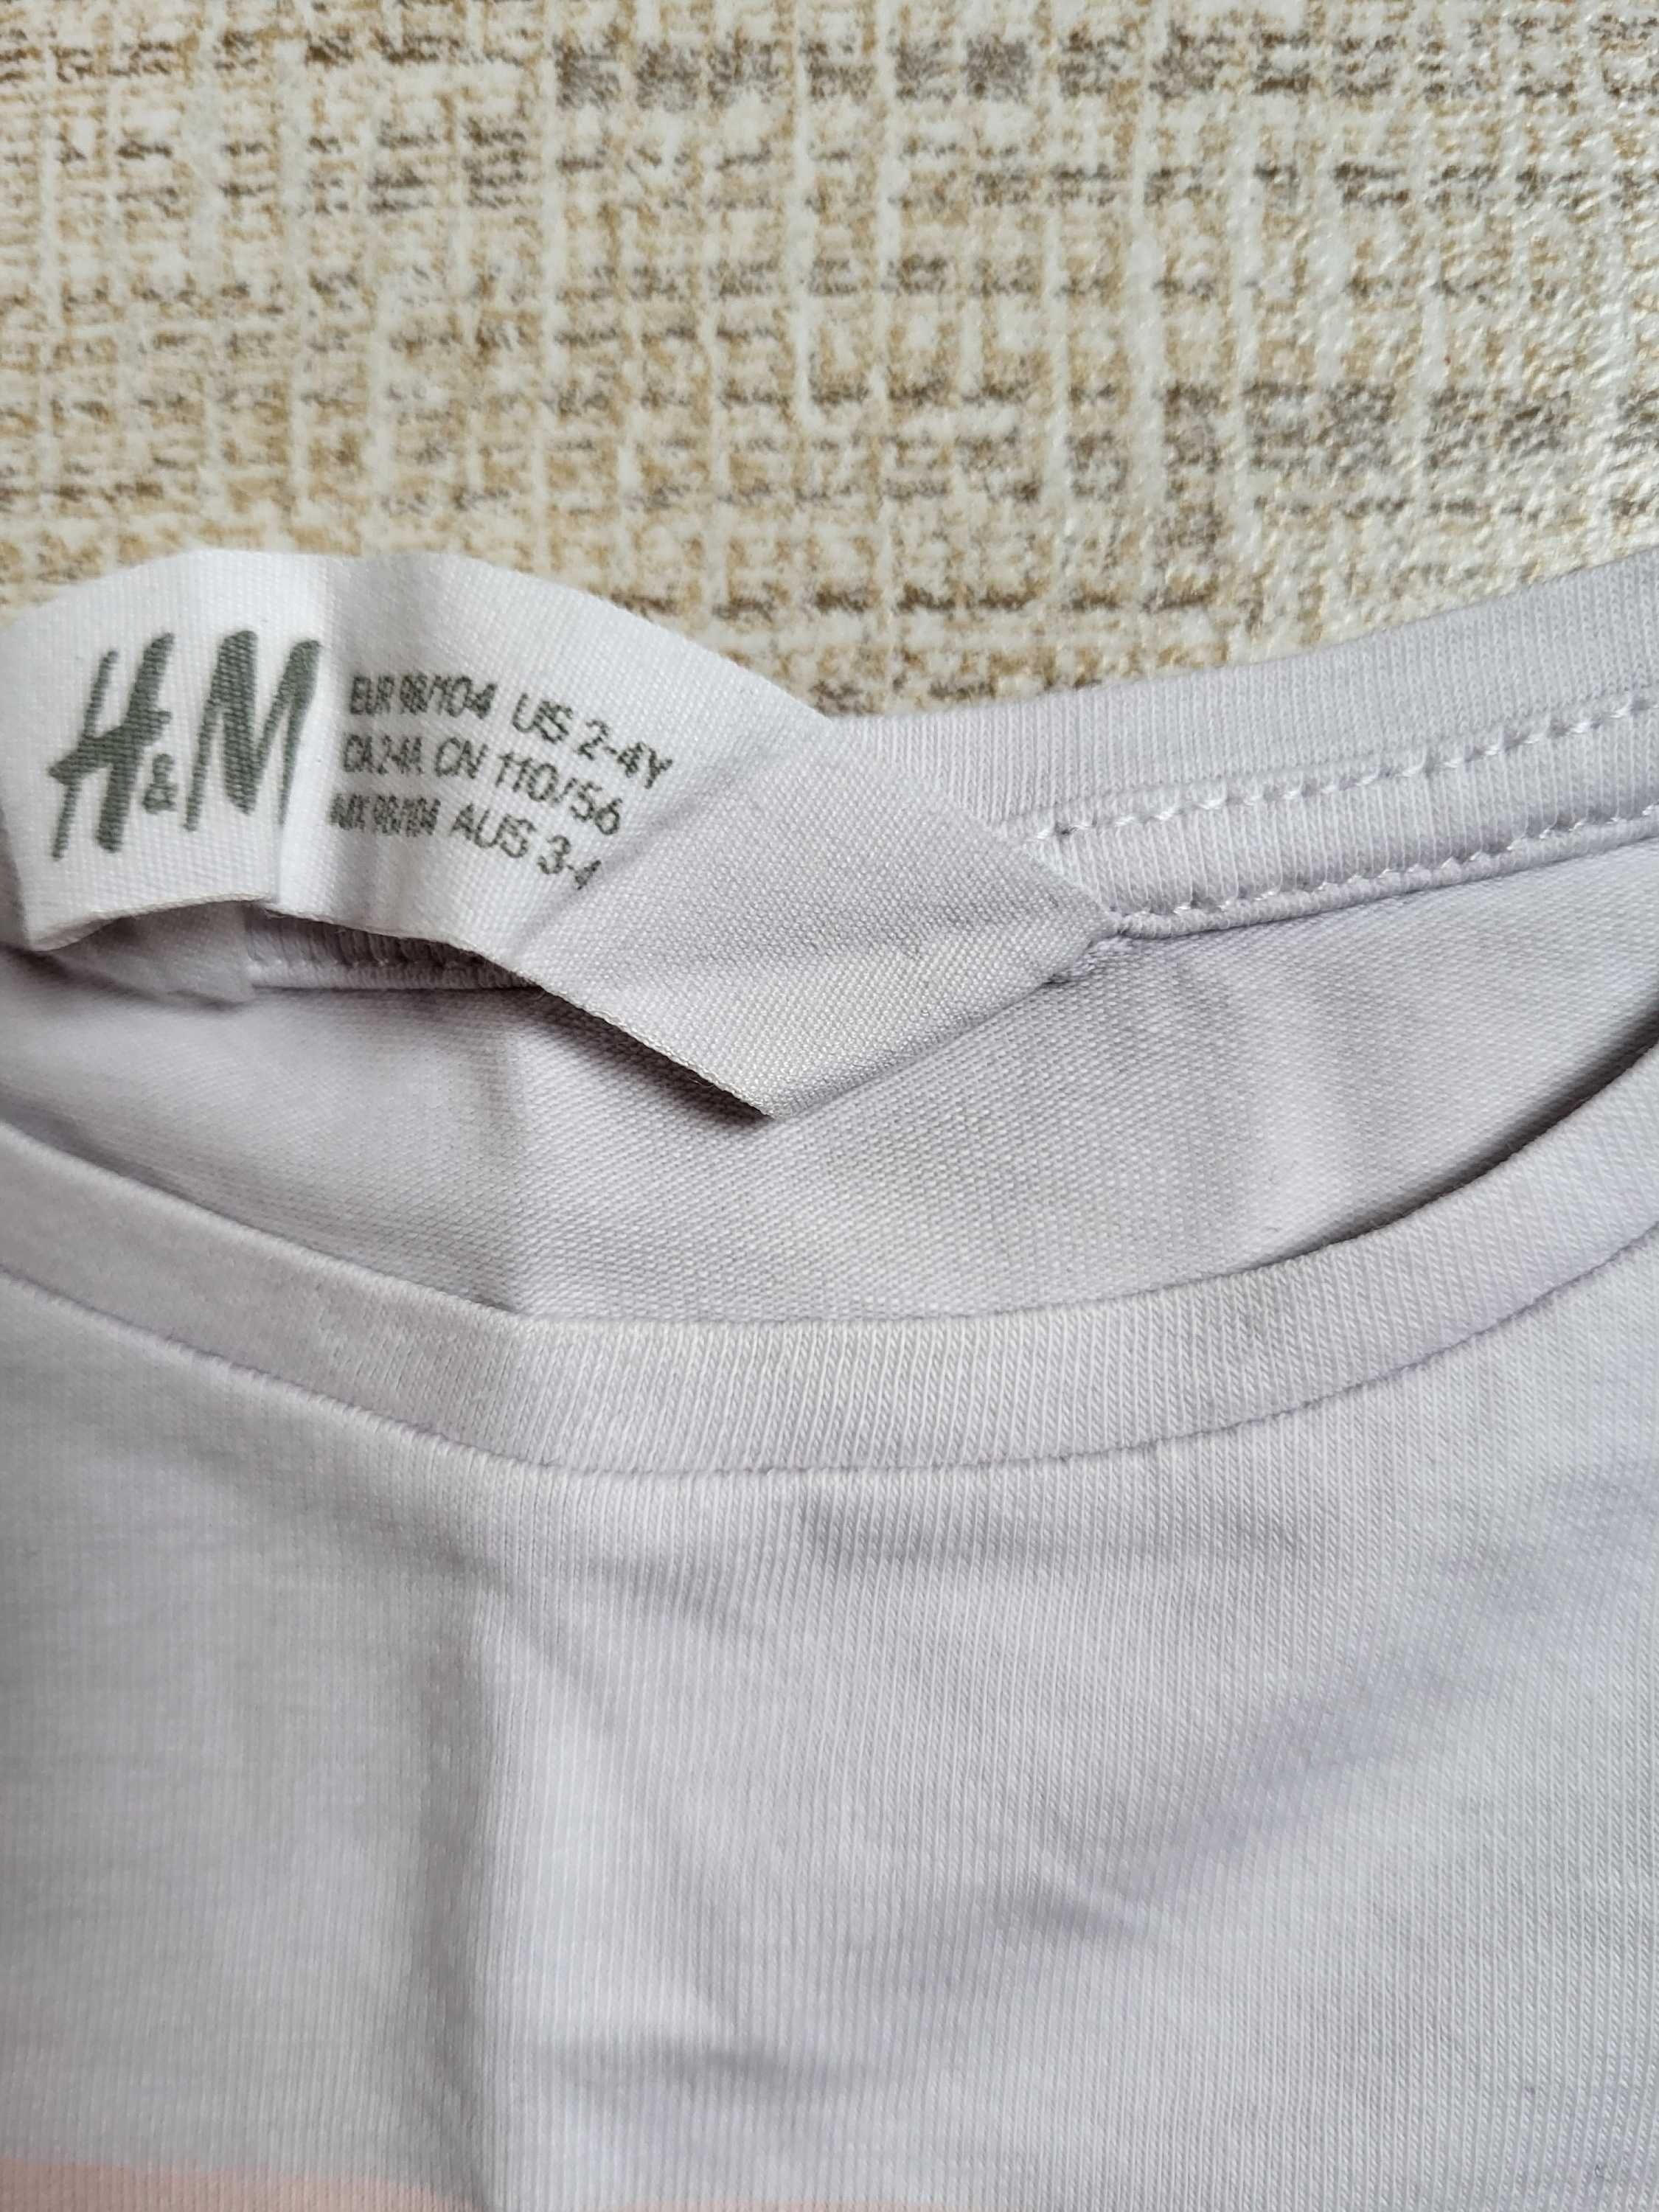 2 bluzki z długim rękawem H&M i Cool Club 98-104